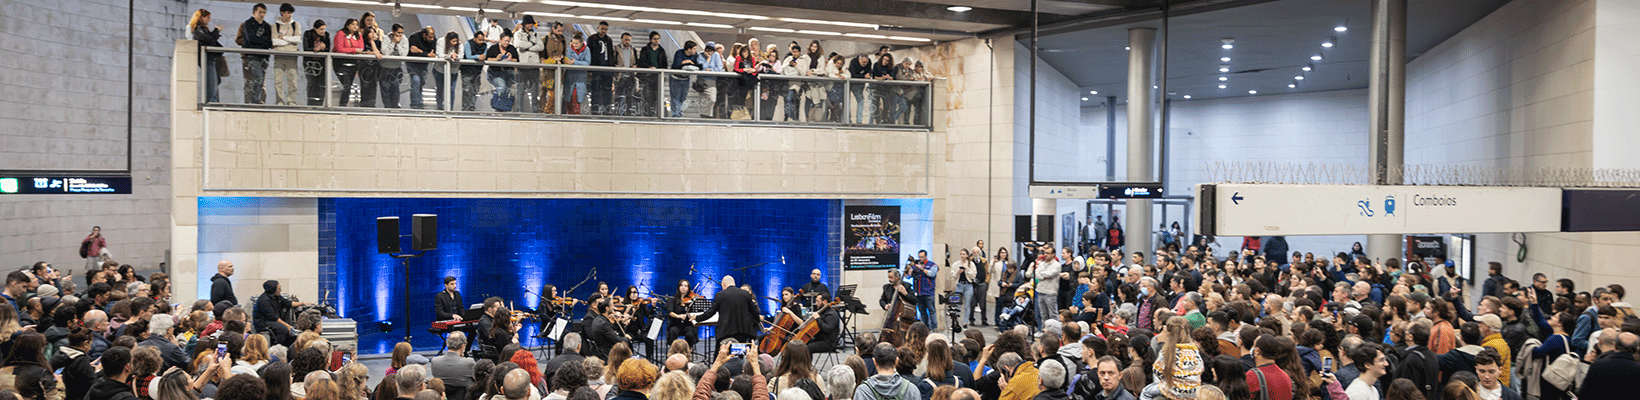 Fotografia de um palco com músicos na estação Alameda (linha Vermelha).